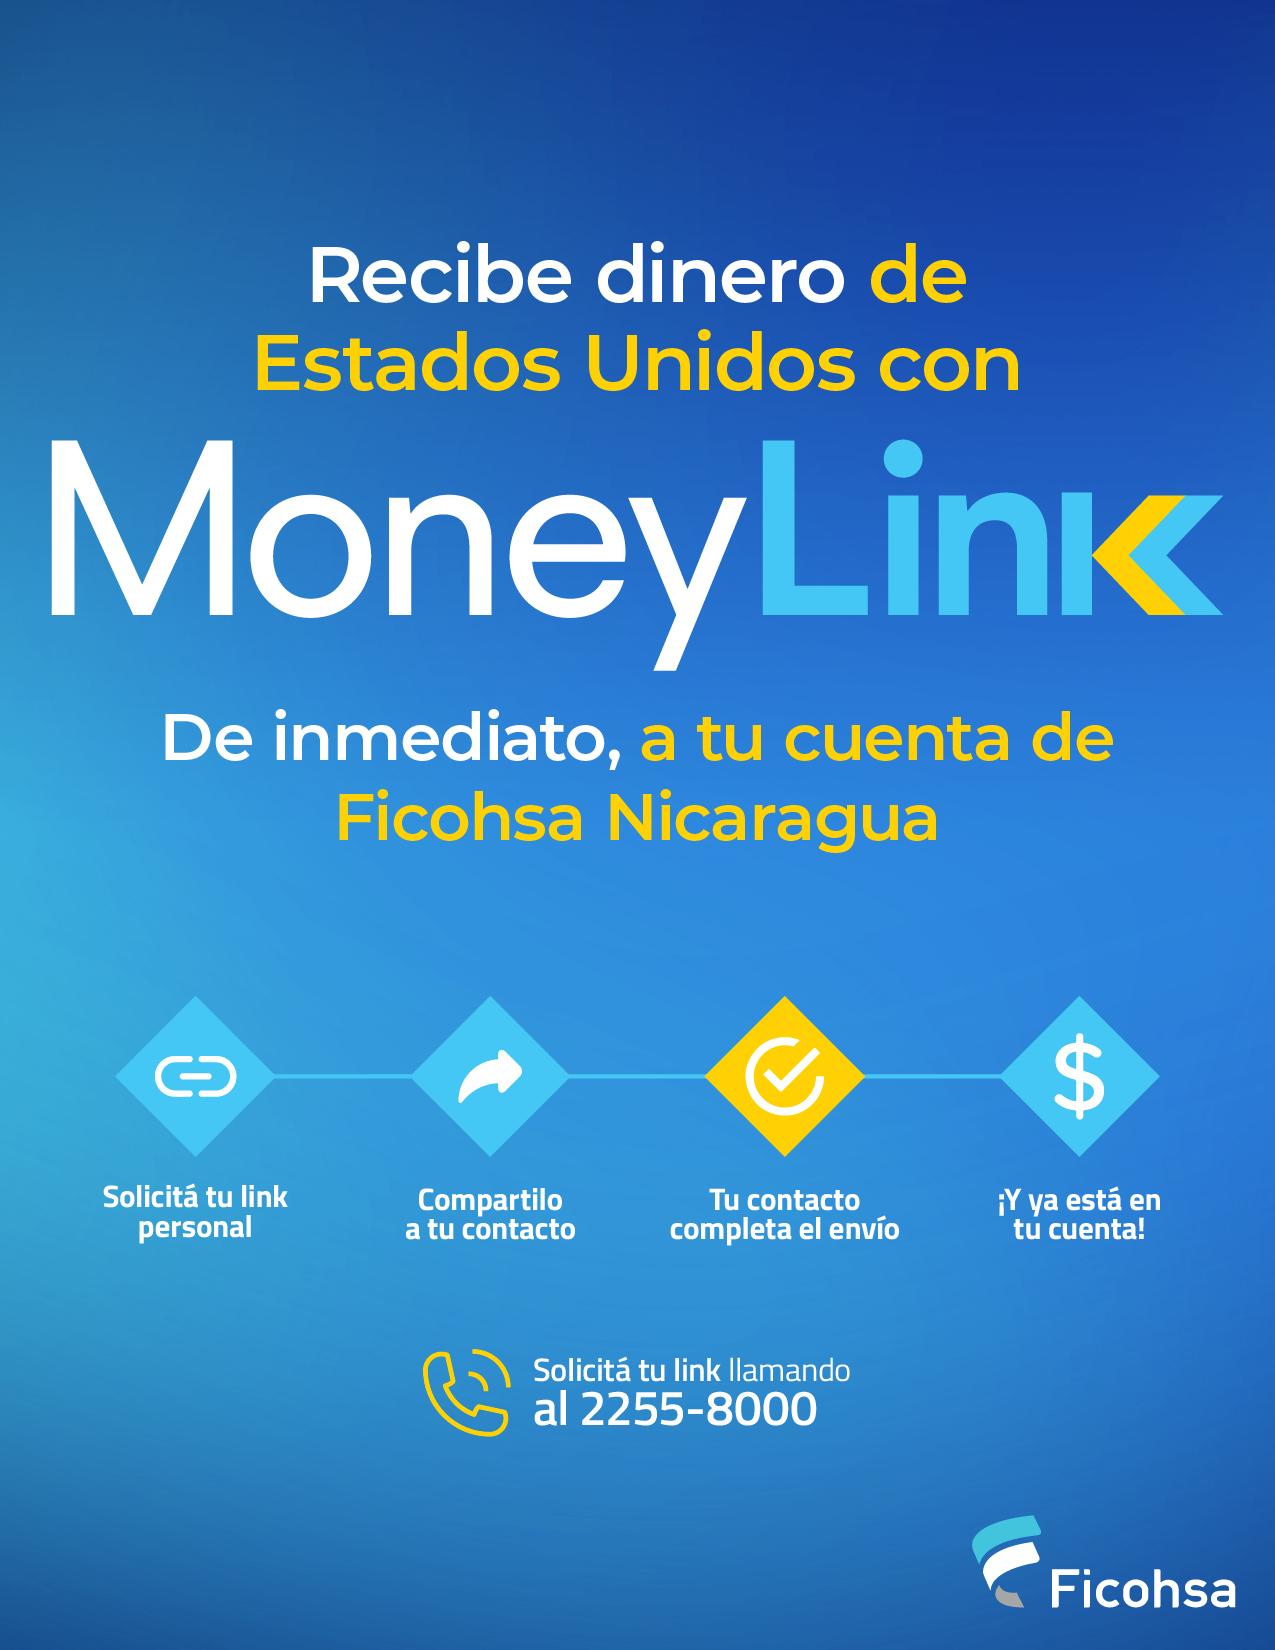 MoneyLink